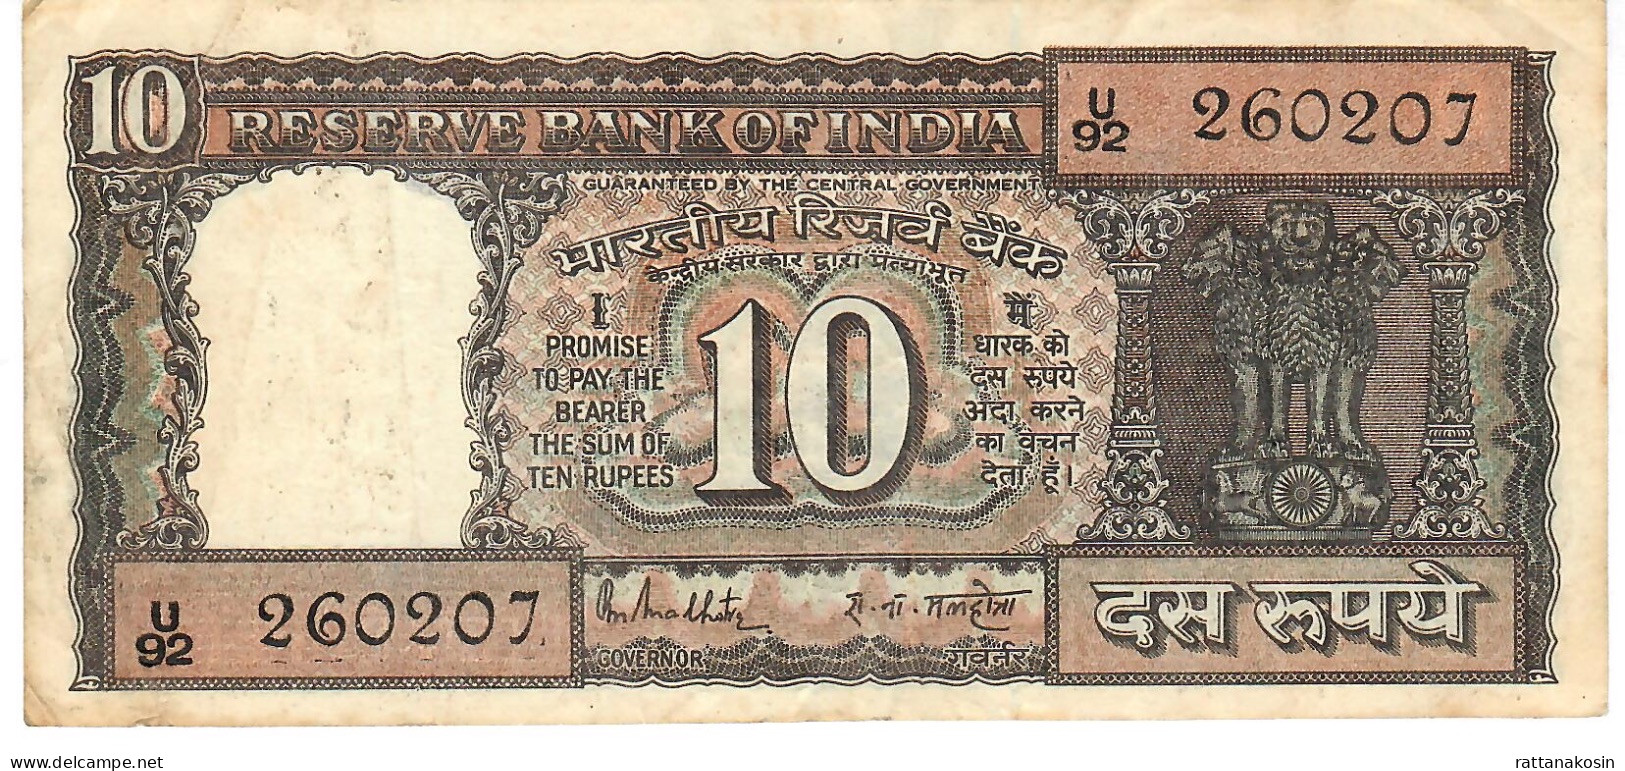 INDIA P60g2 10 RUPEES 1975 Signature 15 (MALHOTRA) LETTER G  VF 2 P.h. - Inde